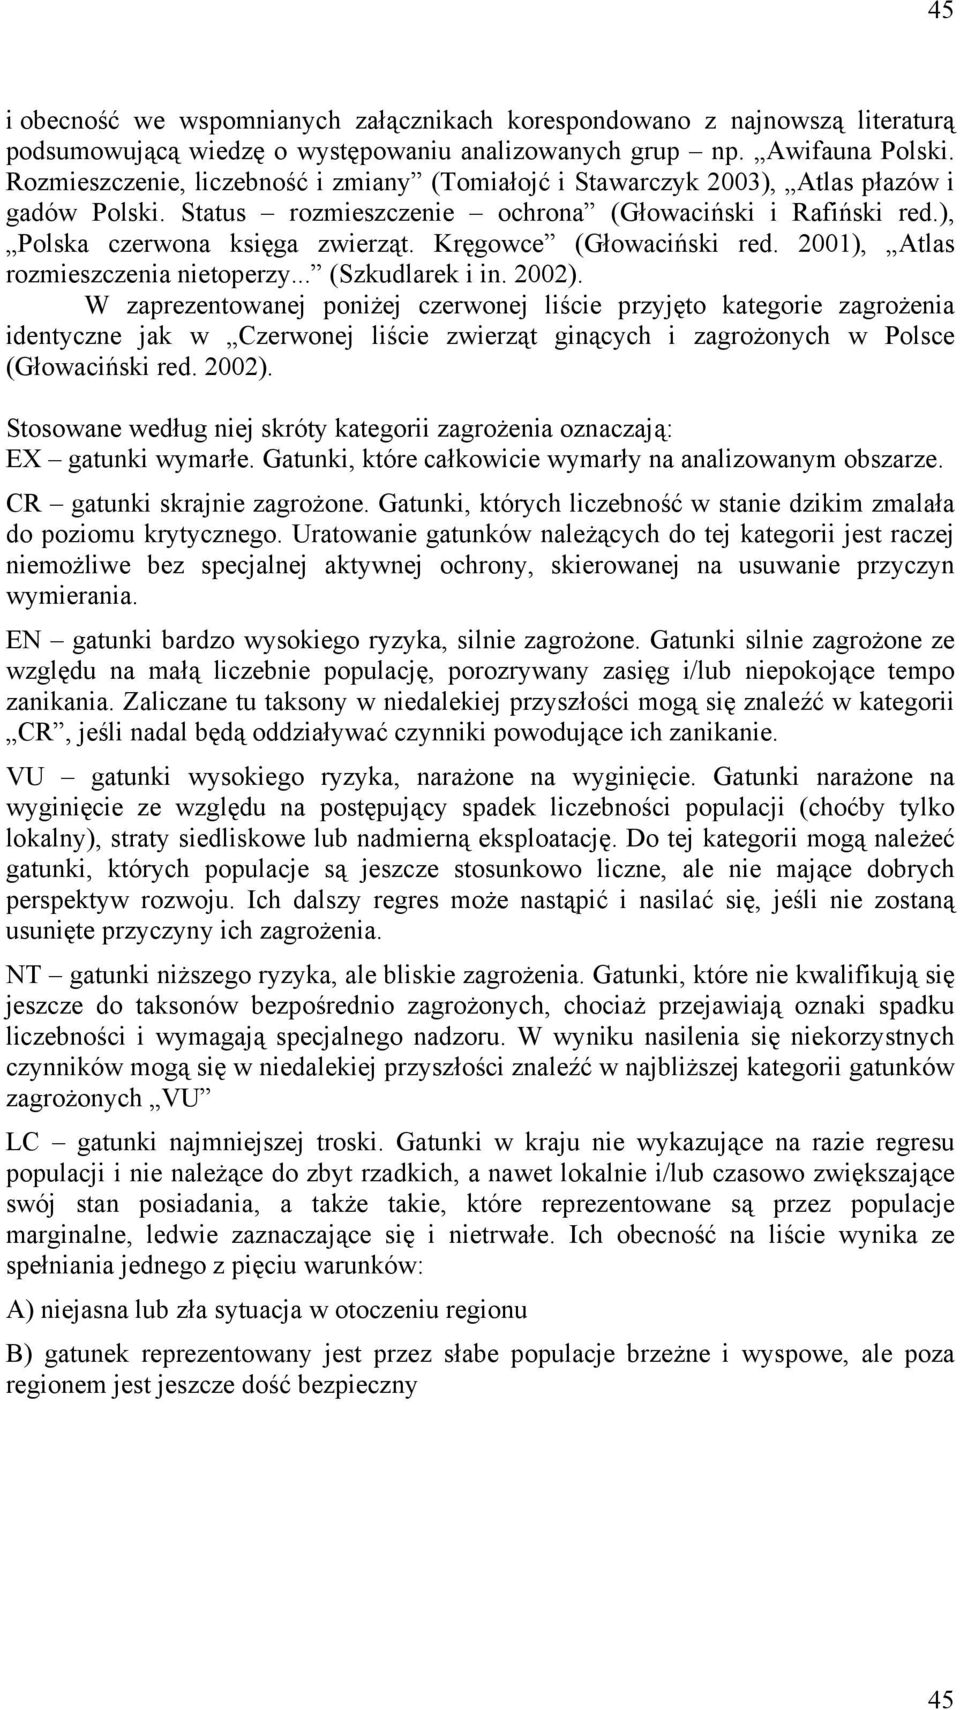 Kręgowce (Głowaciński red. 2001), Atlas rozmieszczenia nietoperzy... (Szkudlarek i in. 2002).